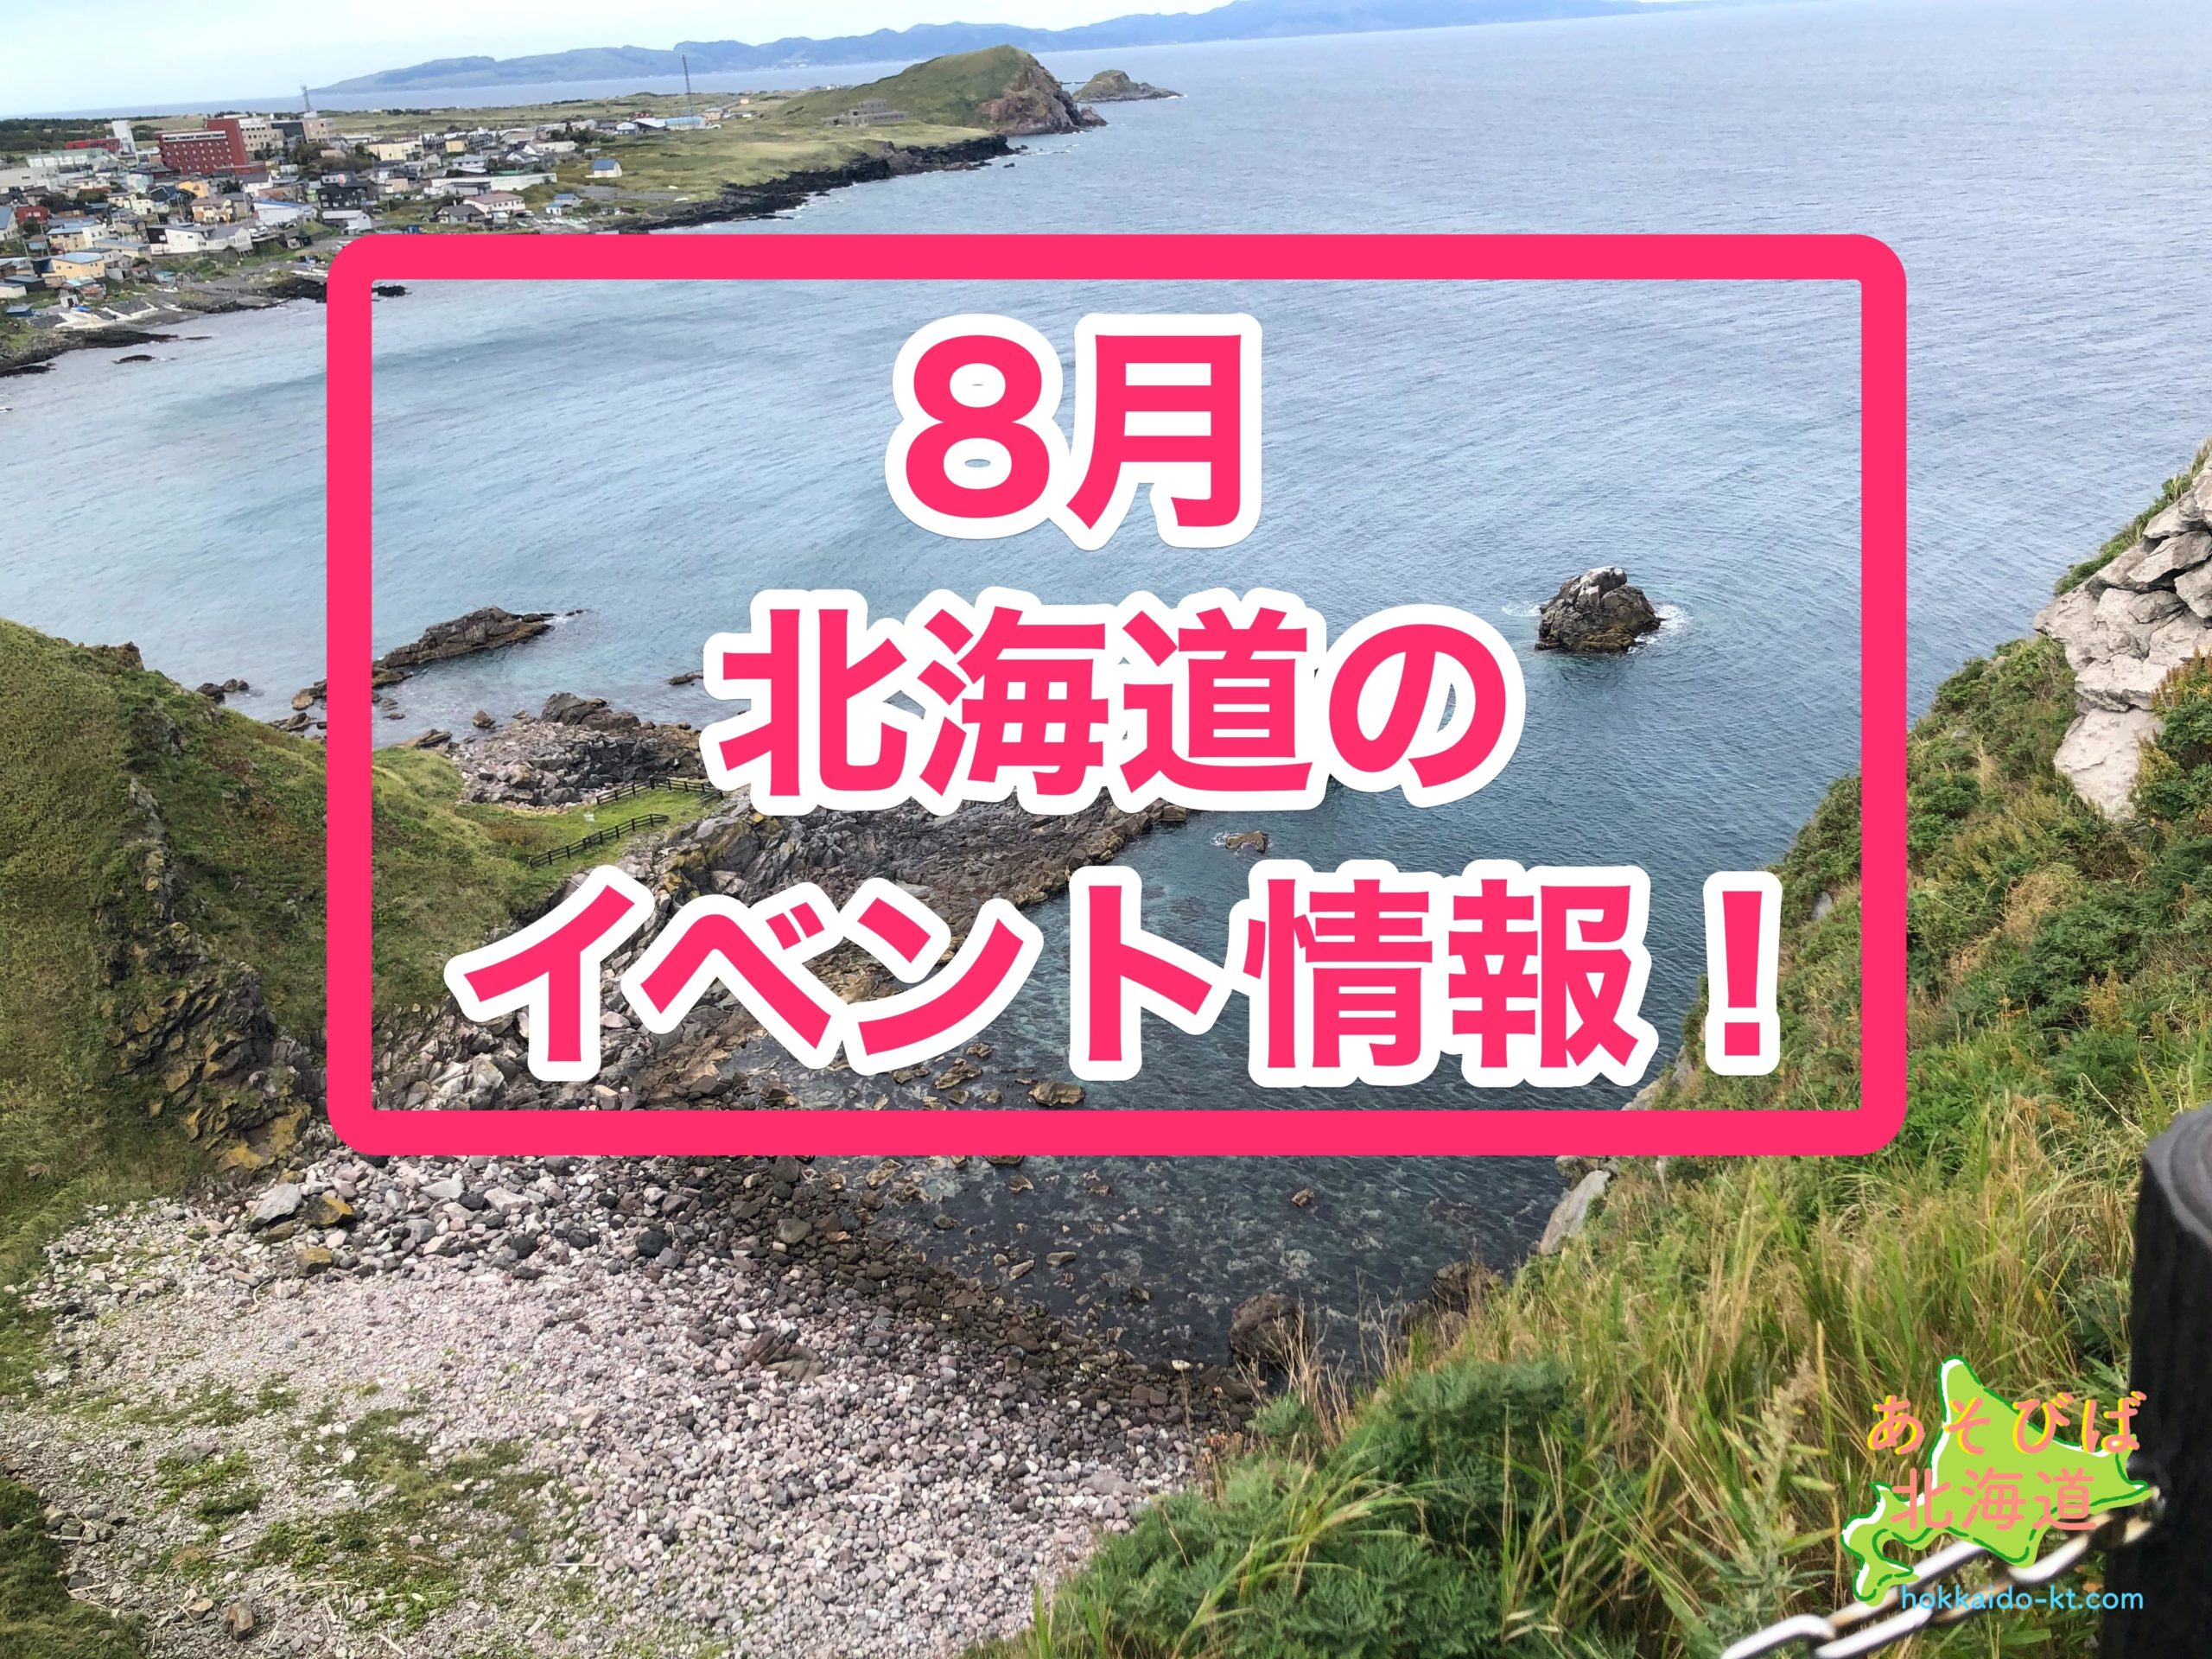 8月の北海道のイベント情報